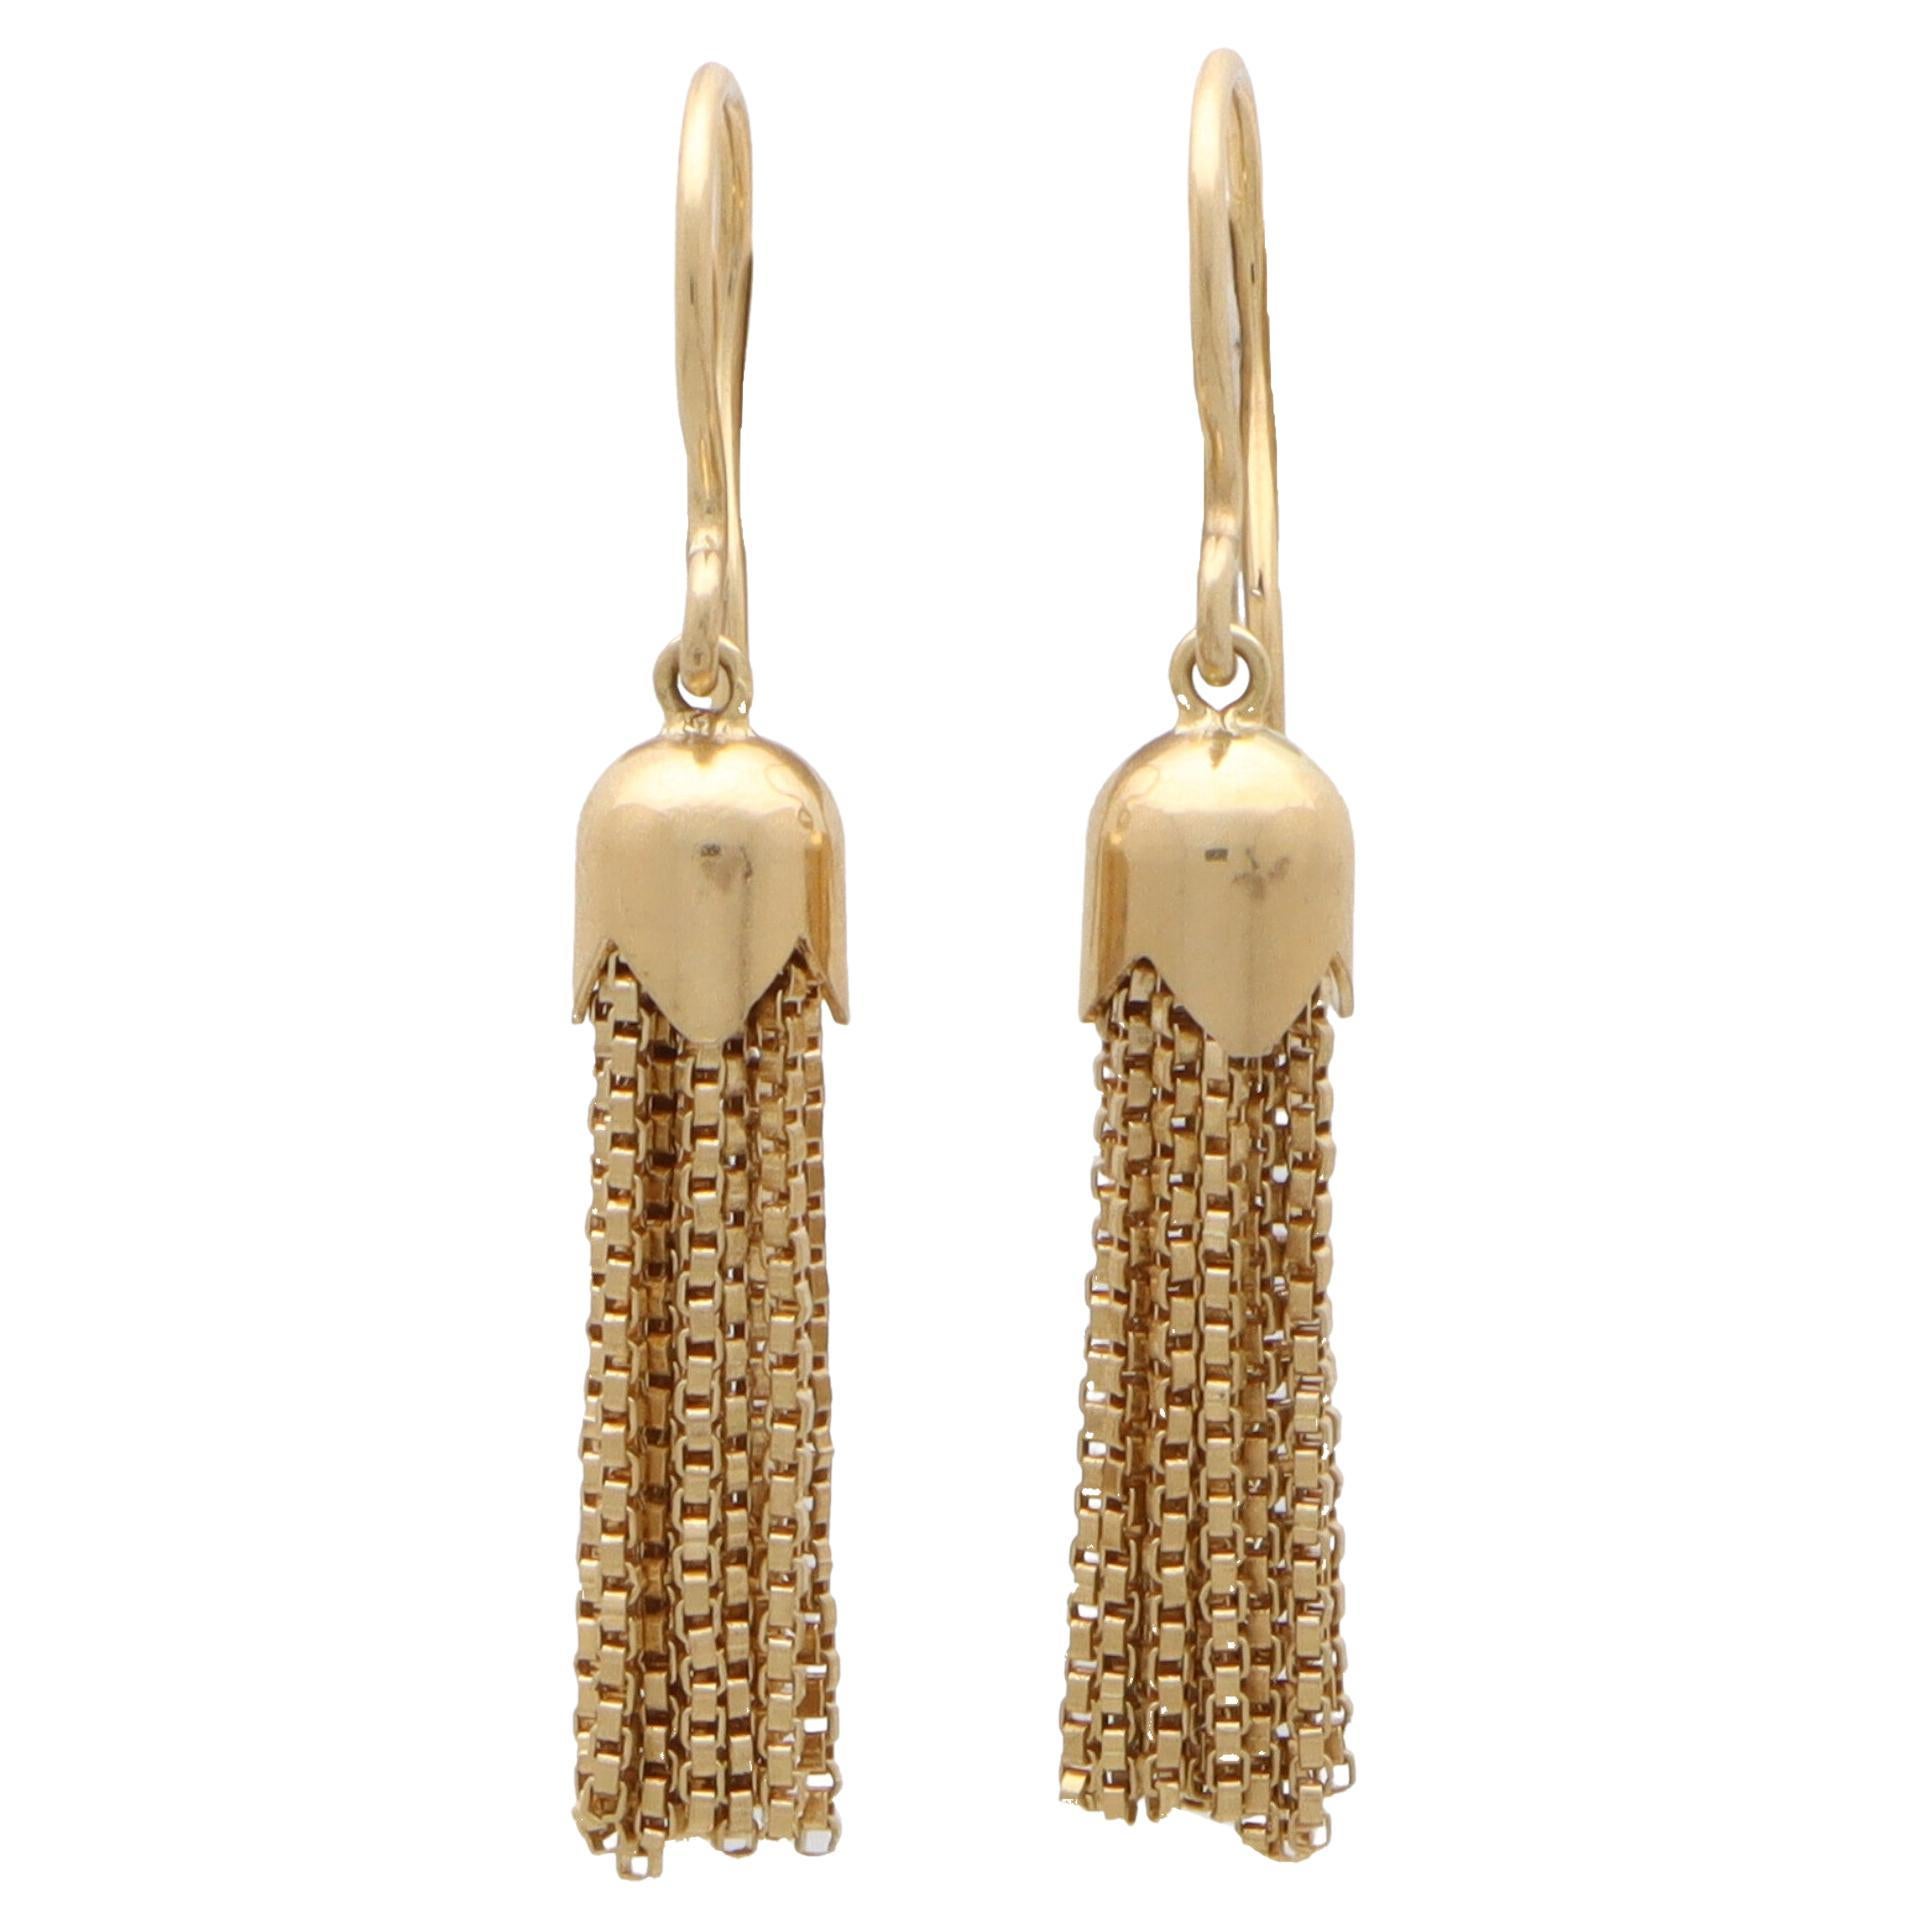 Vintage Tassel Dangle Drop Earrings Set in 18k Yellow Gold